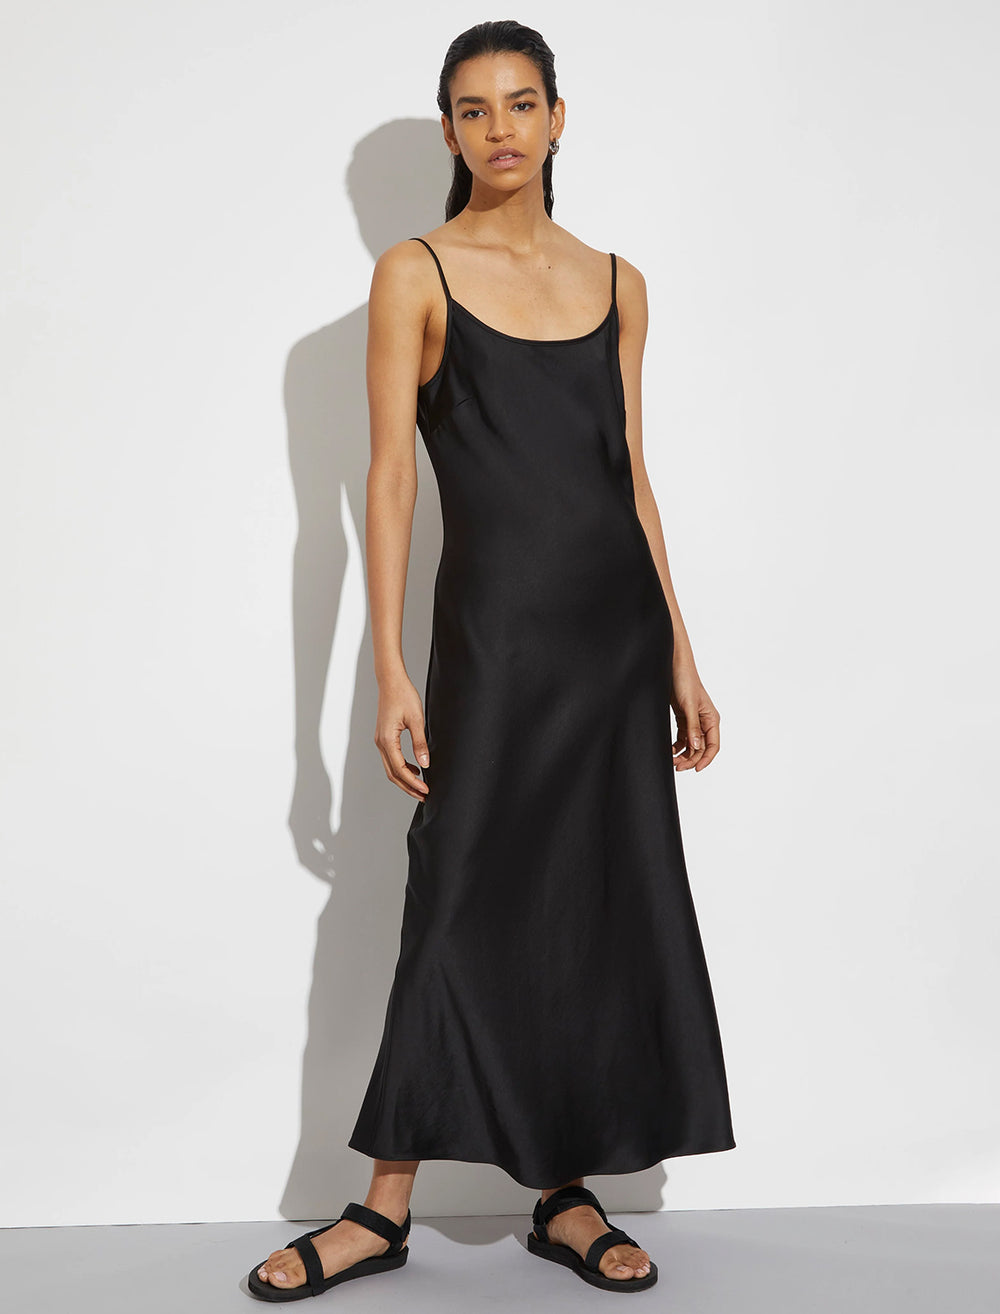 Model wearing Saint Art's haley slip dress in black.